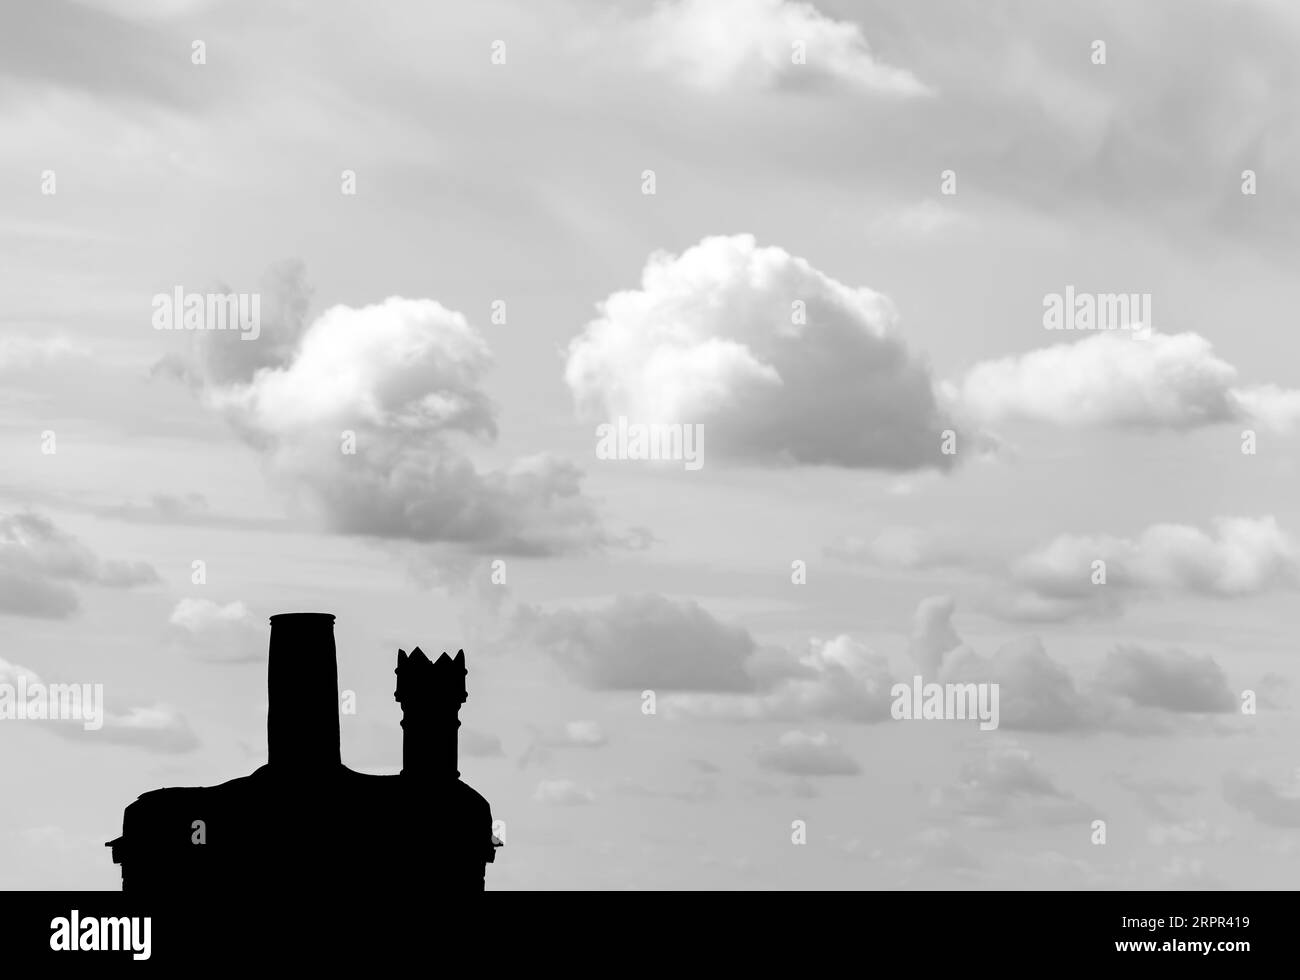 Silhouette de cheminée contre ciel gris, Lincolnshire, Angleterre, royaume-uni Banque D'Images